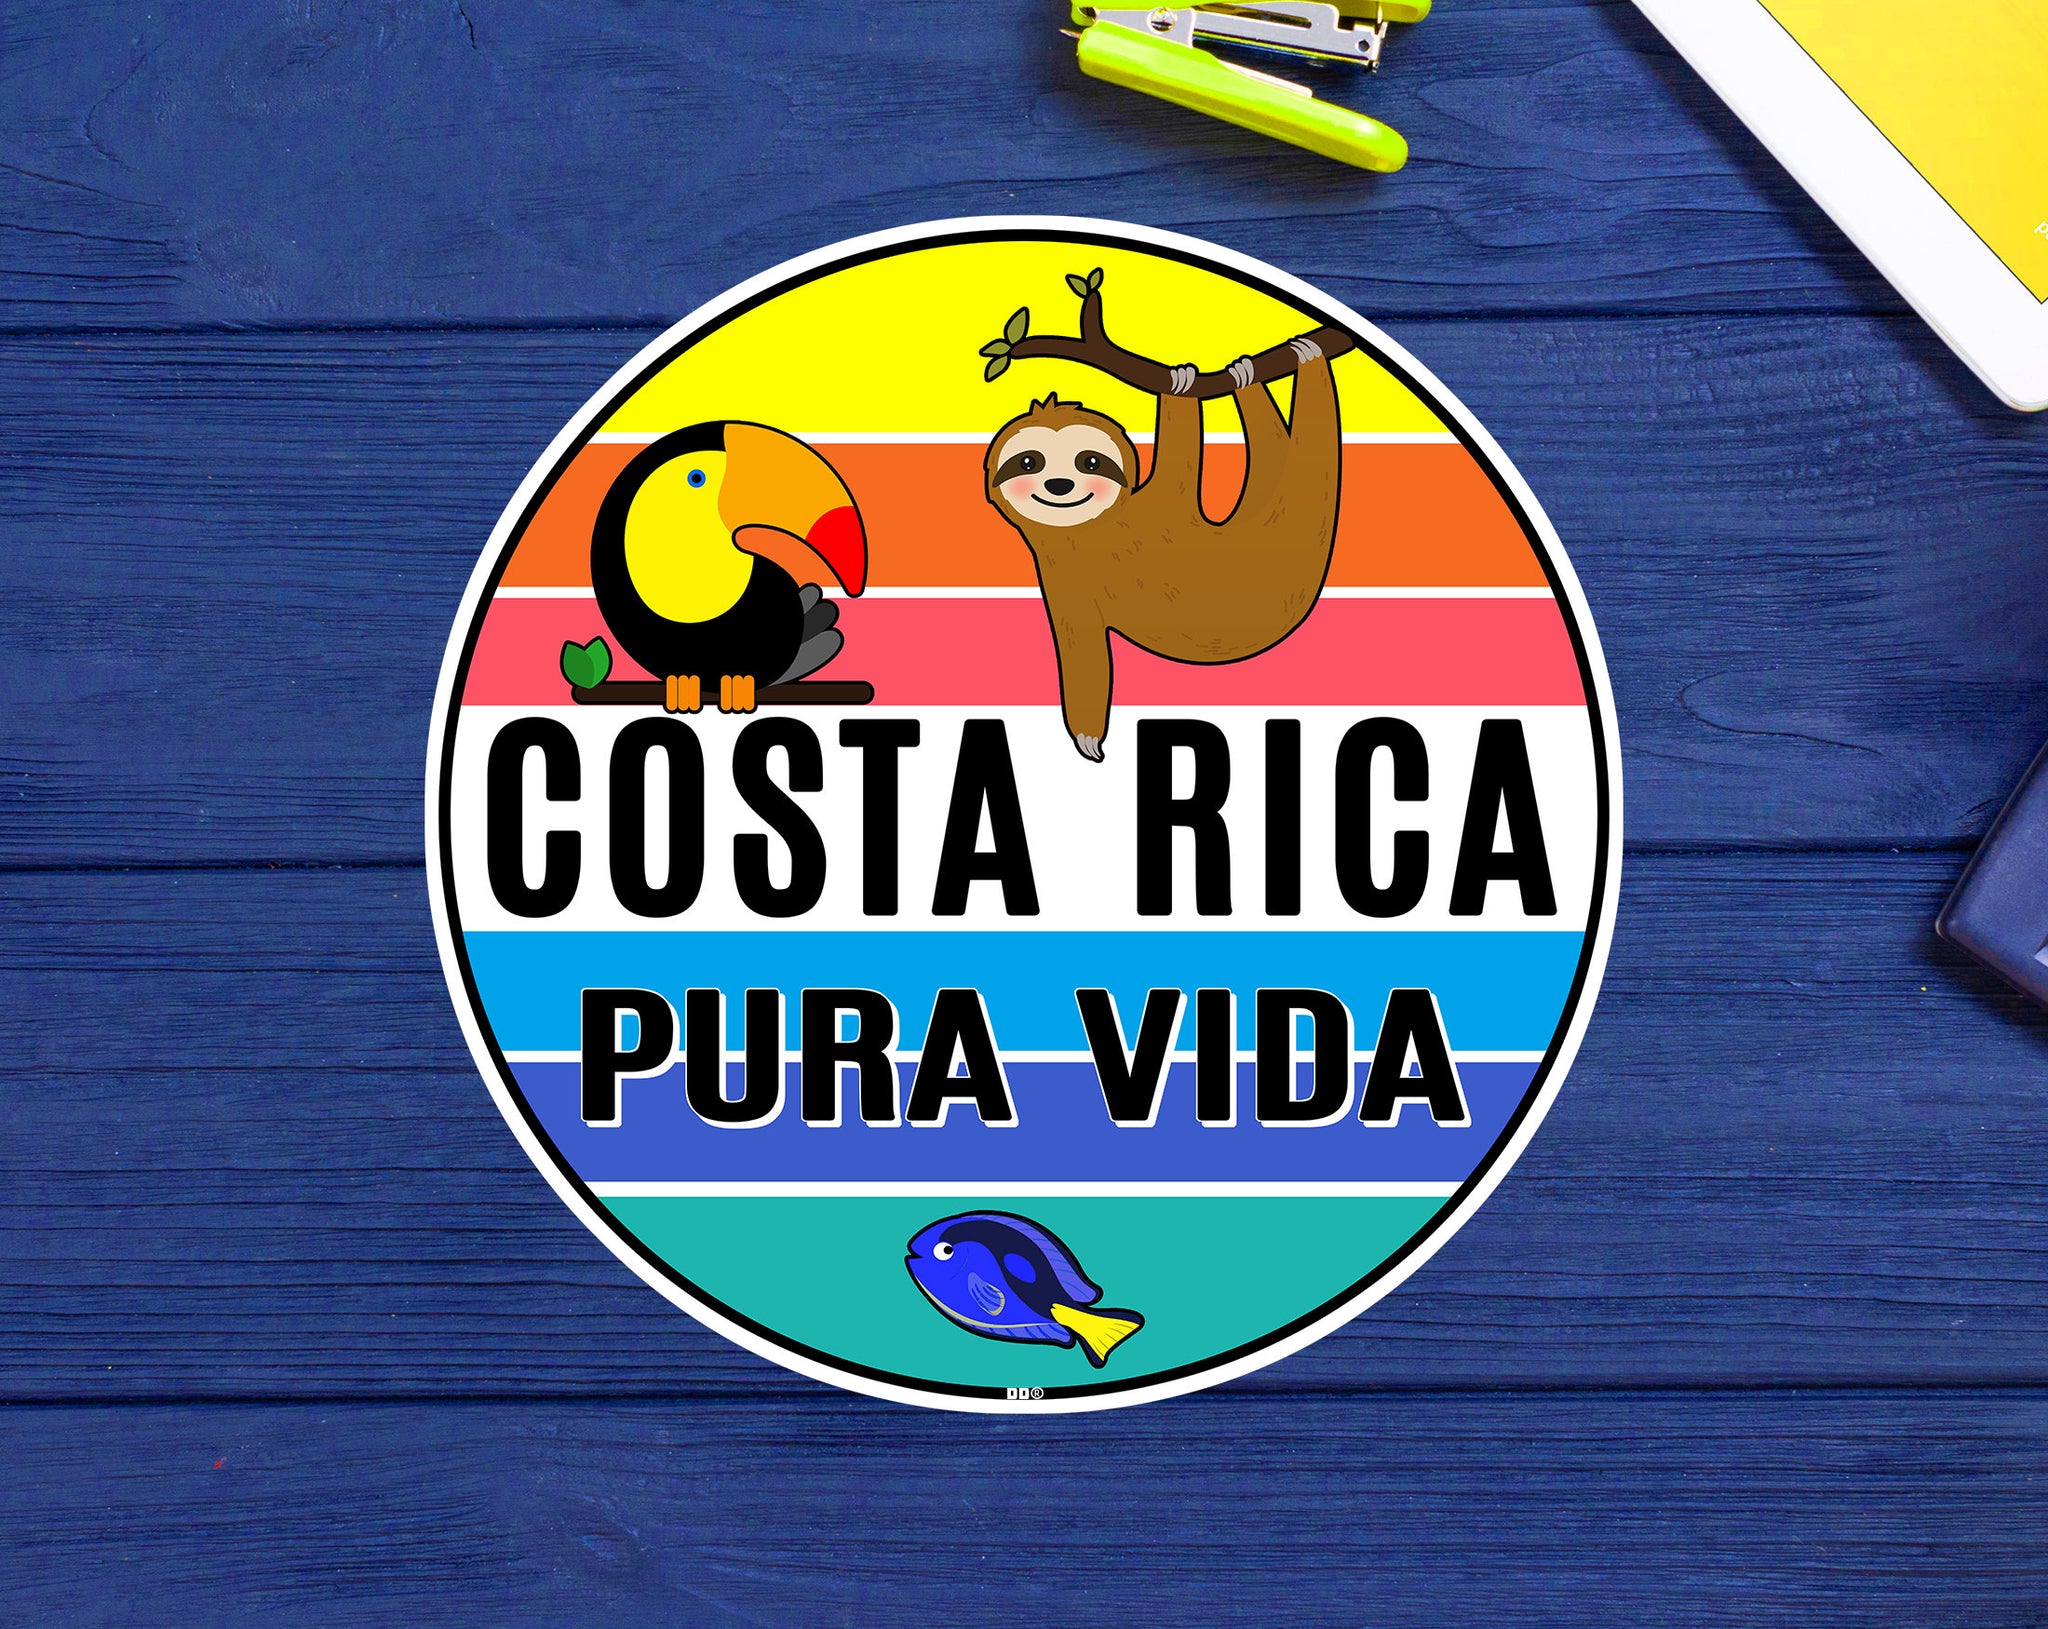 Costa Rica Pura Vida Sticker Decal Vinyl Tropical 3" Toucan Sloth Souvenir